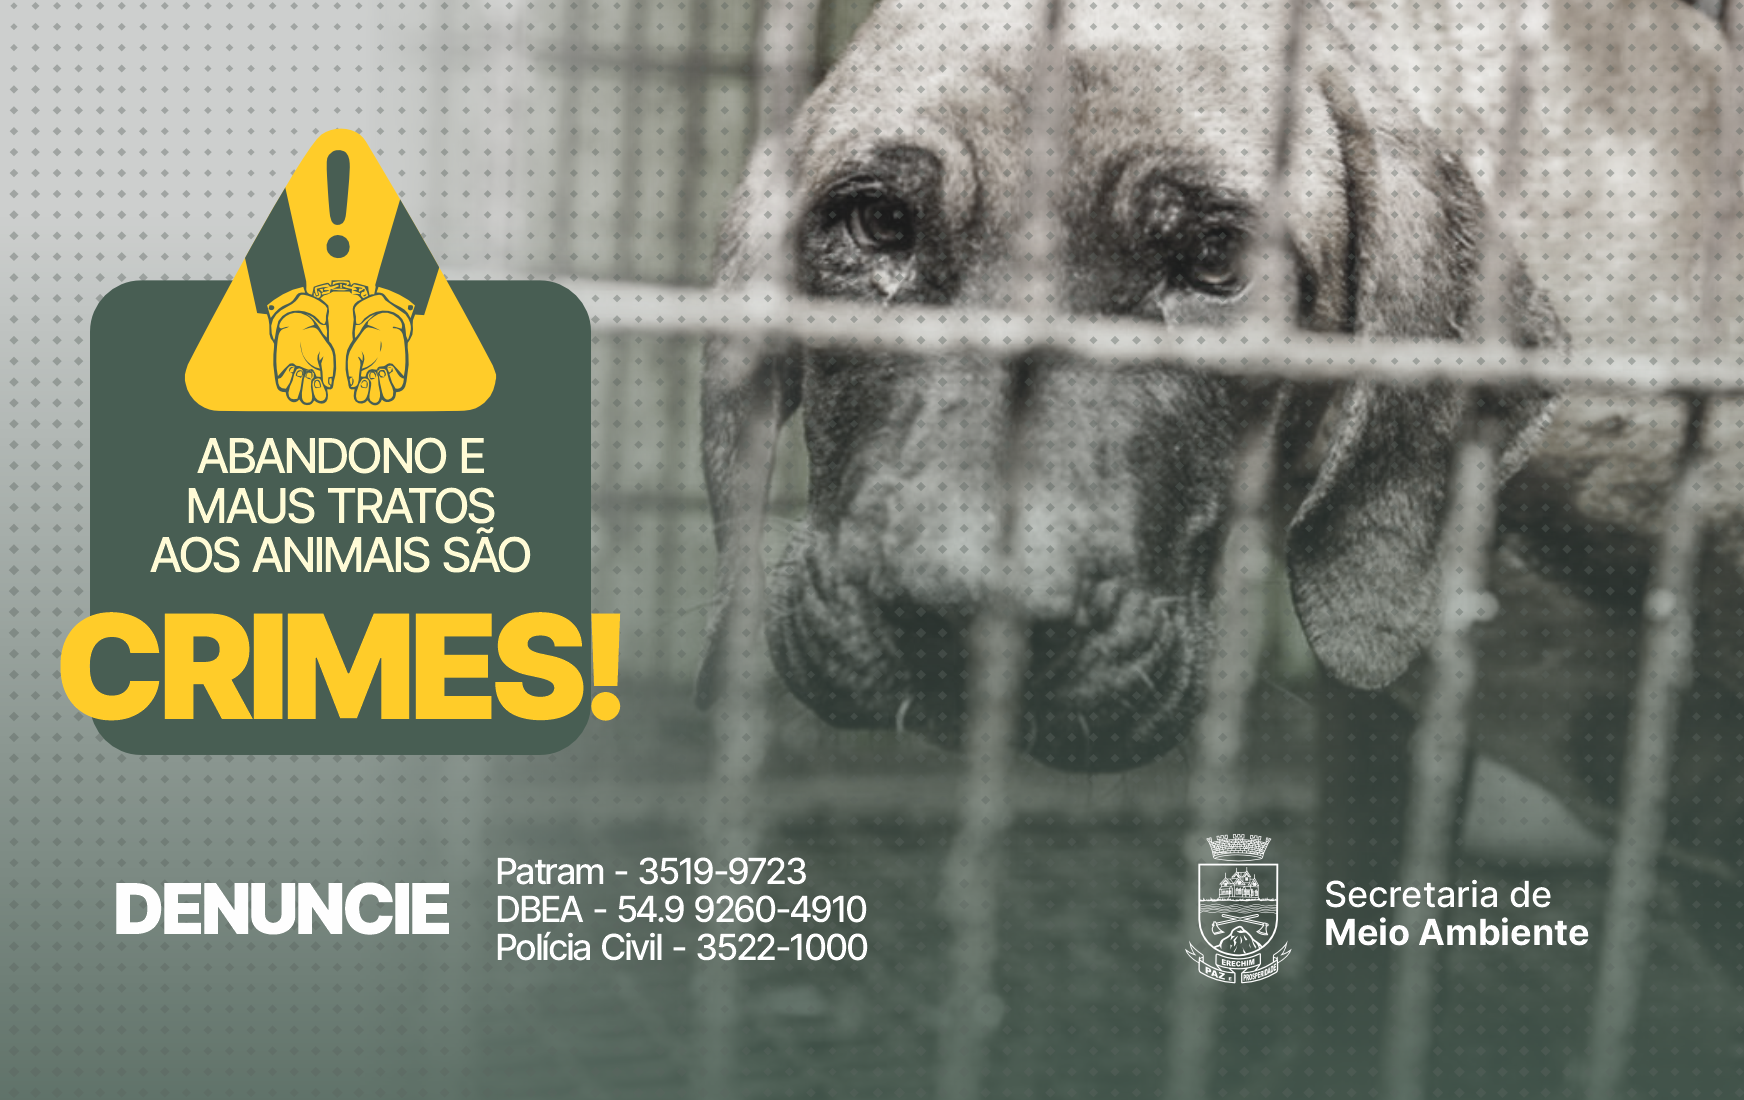  DENUNCIE - Prefeitura alerta que abandono e maus tratos de animais s?o crimes sujeitos  ? pris?o